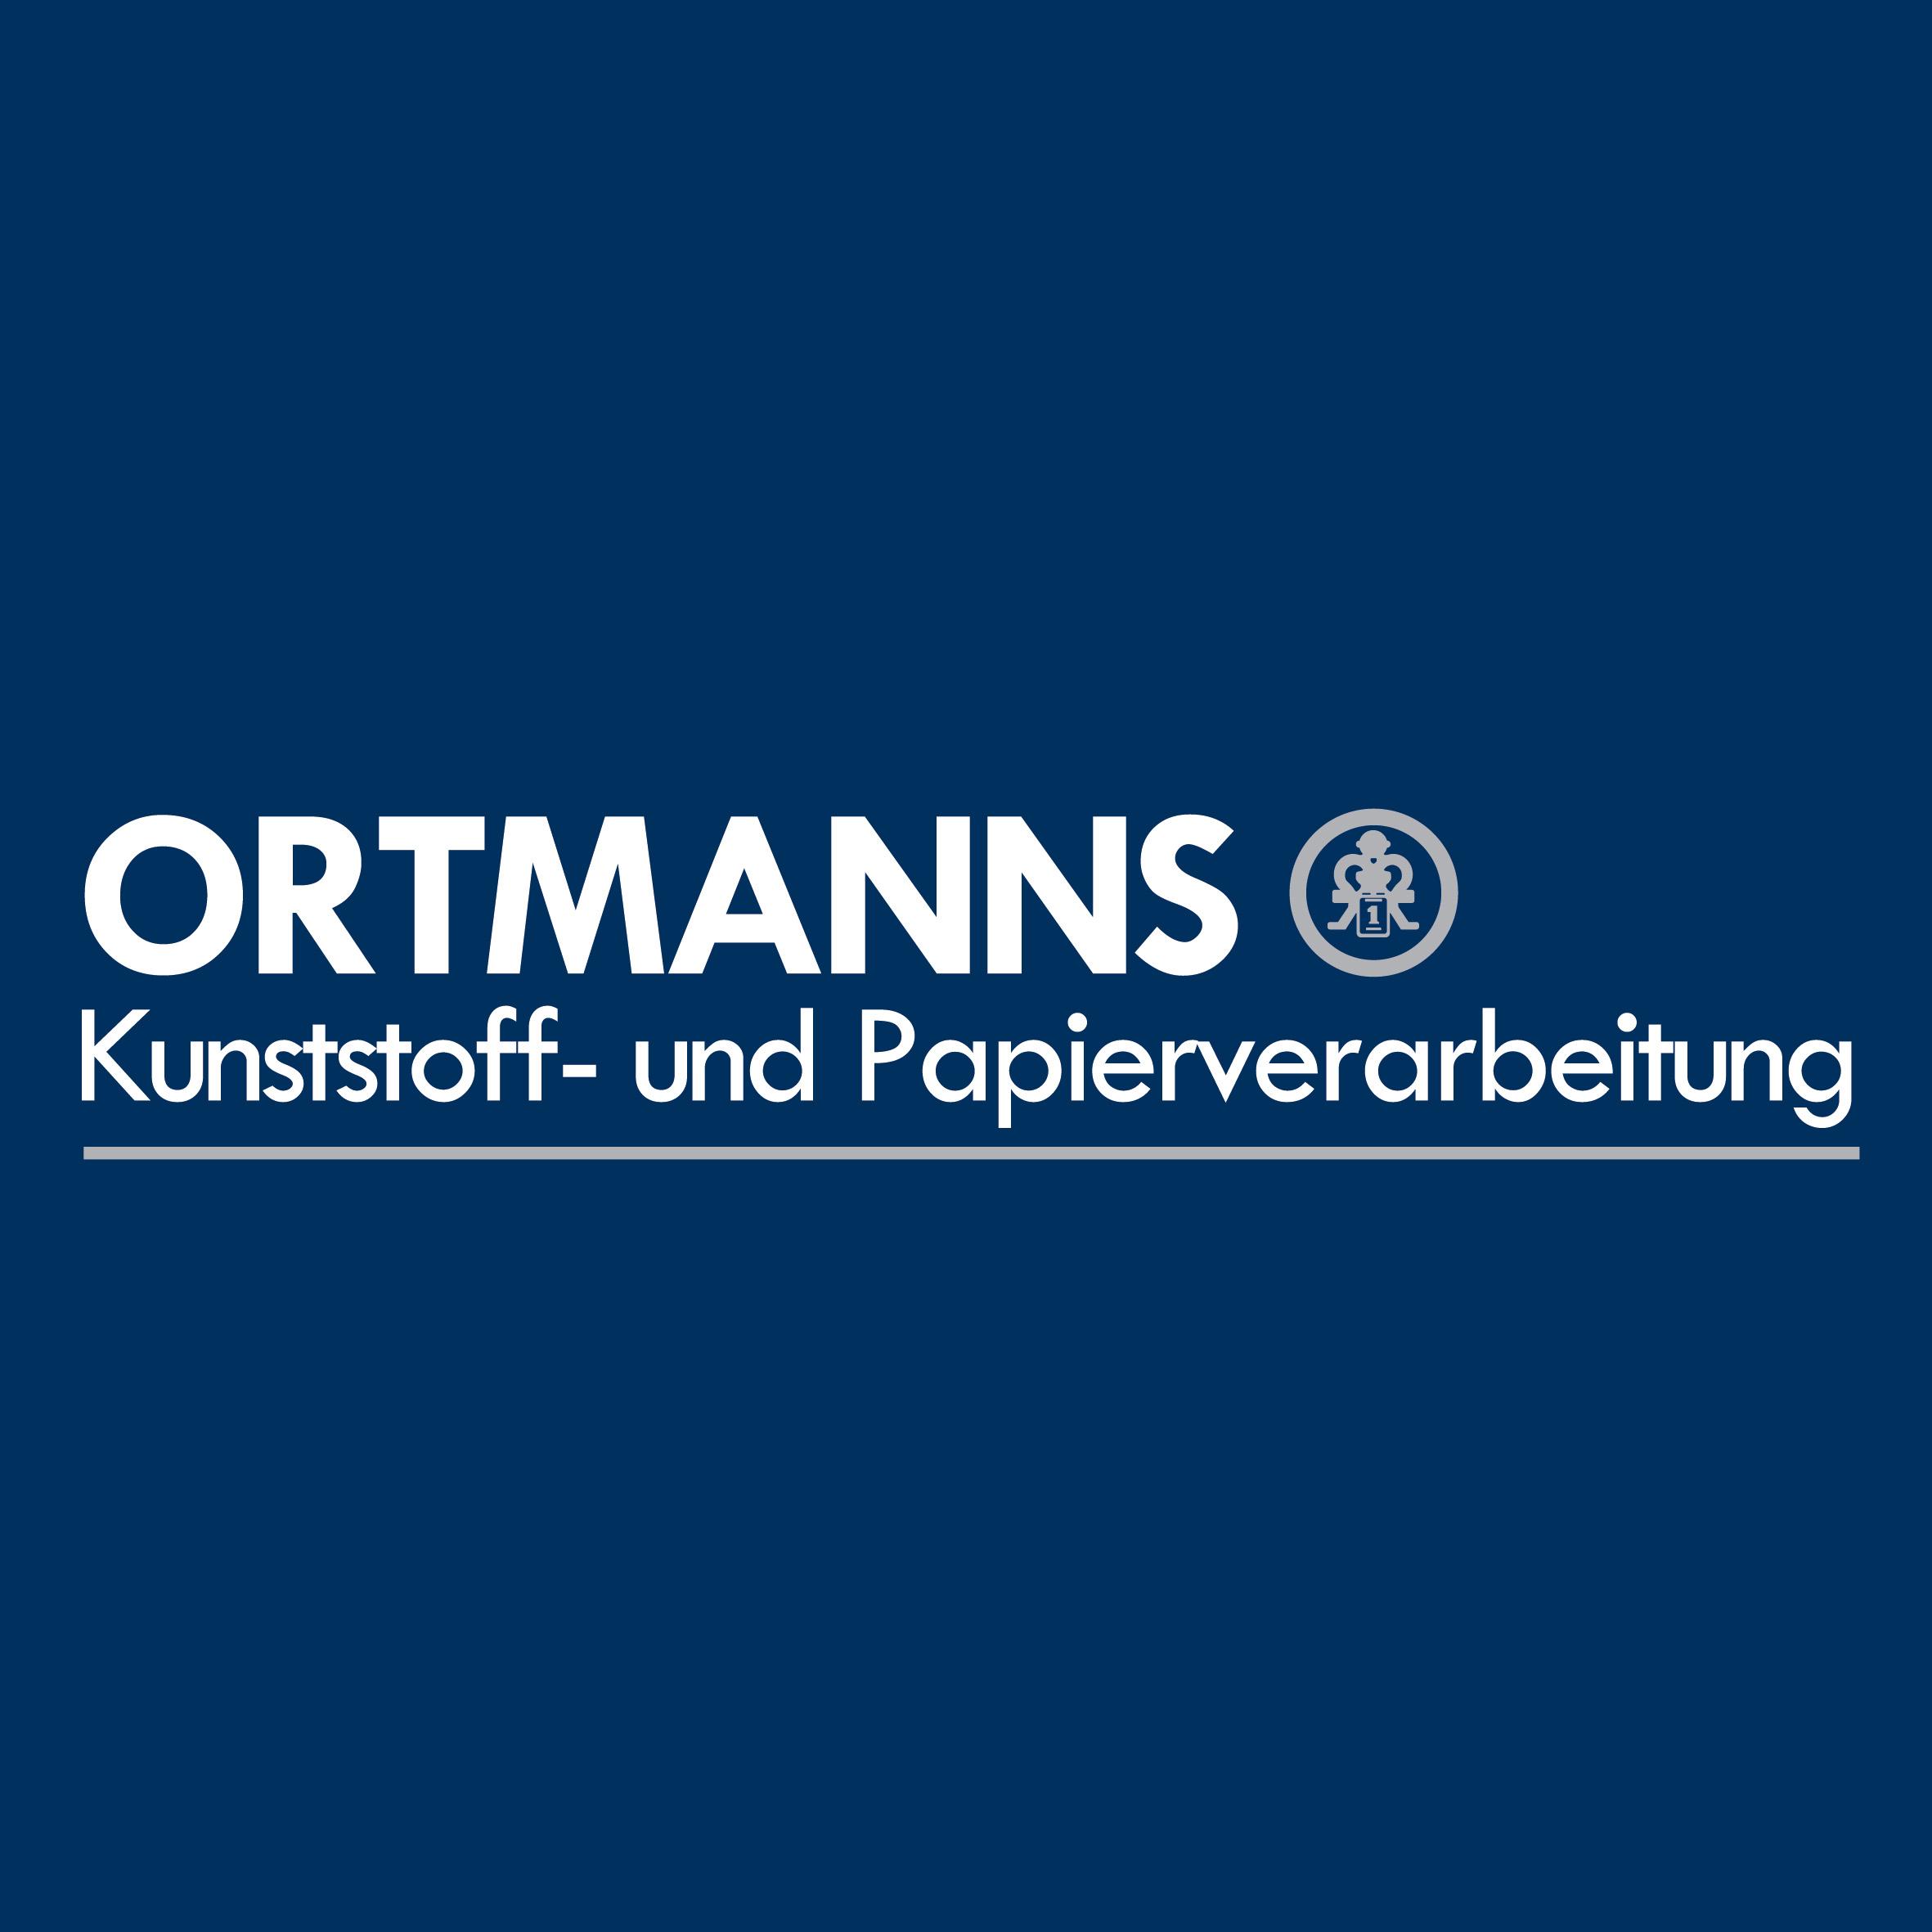 Ortmanns GmbH